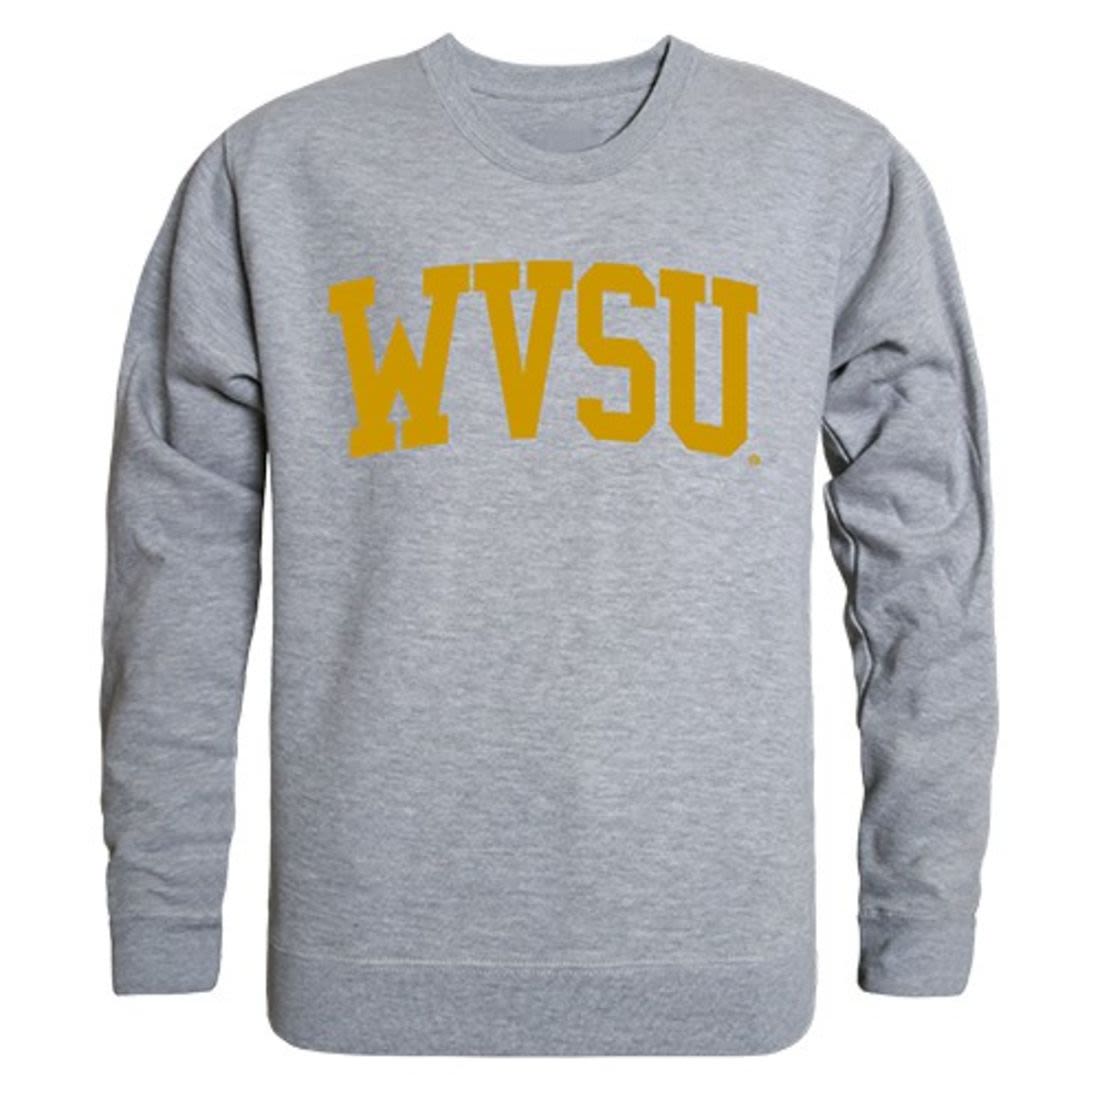 WVSU West Virginia State University Game Day Crewneck Pullover Sweatshirt Sweater Heather Grey-Campus-Wardrobe